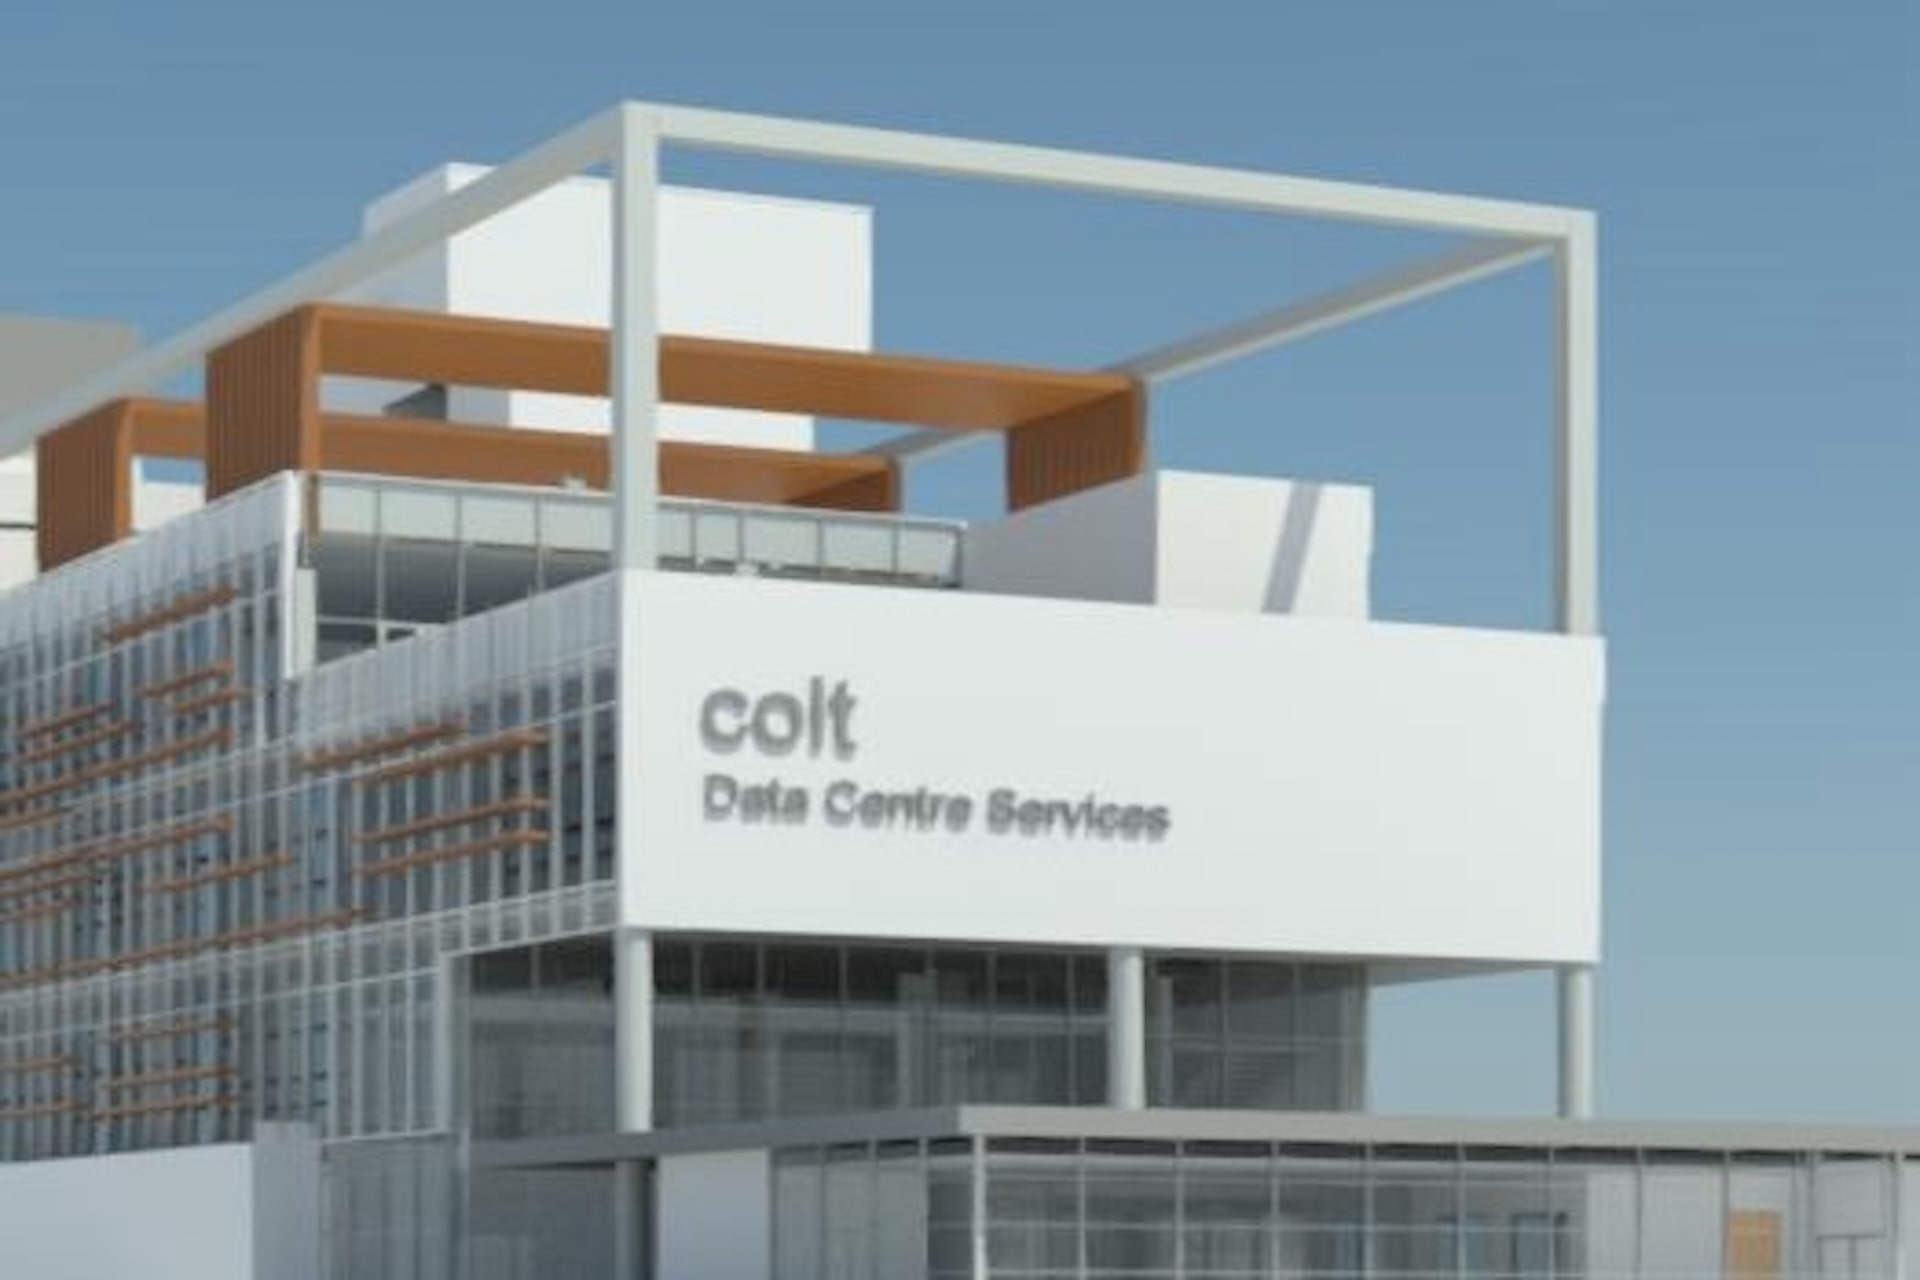 COLT DCHI - Data Centre, Airoli